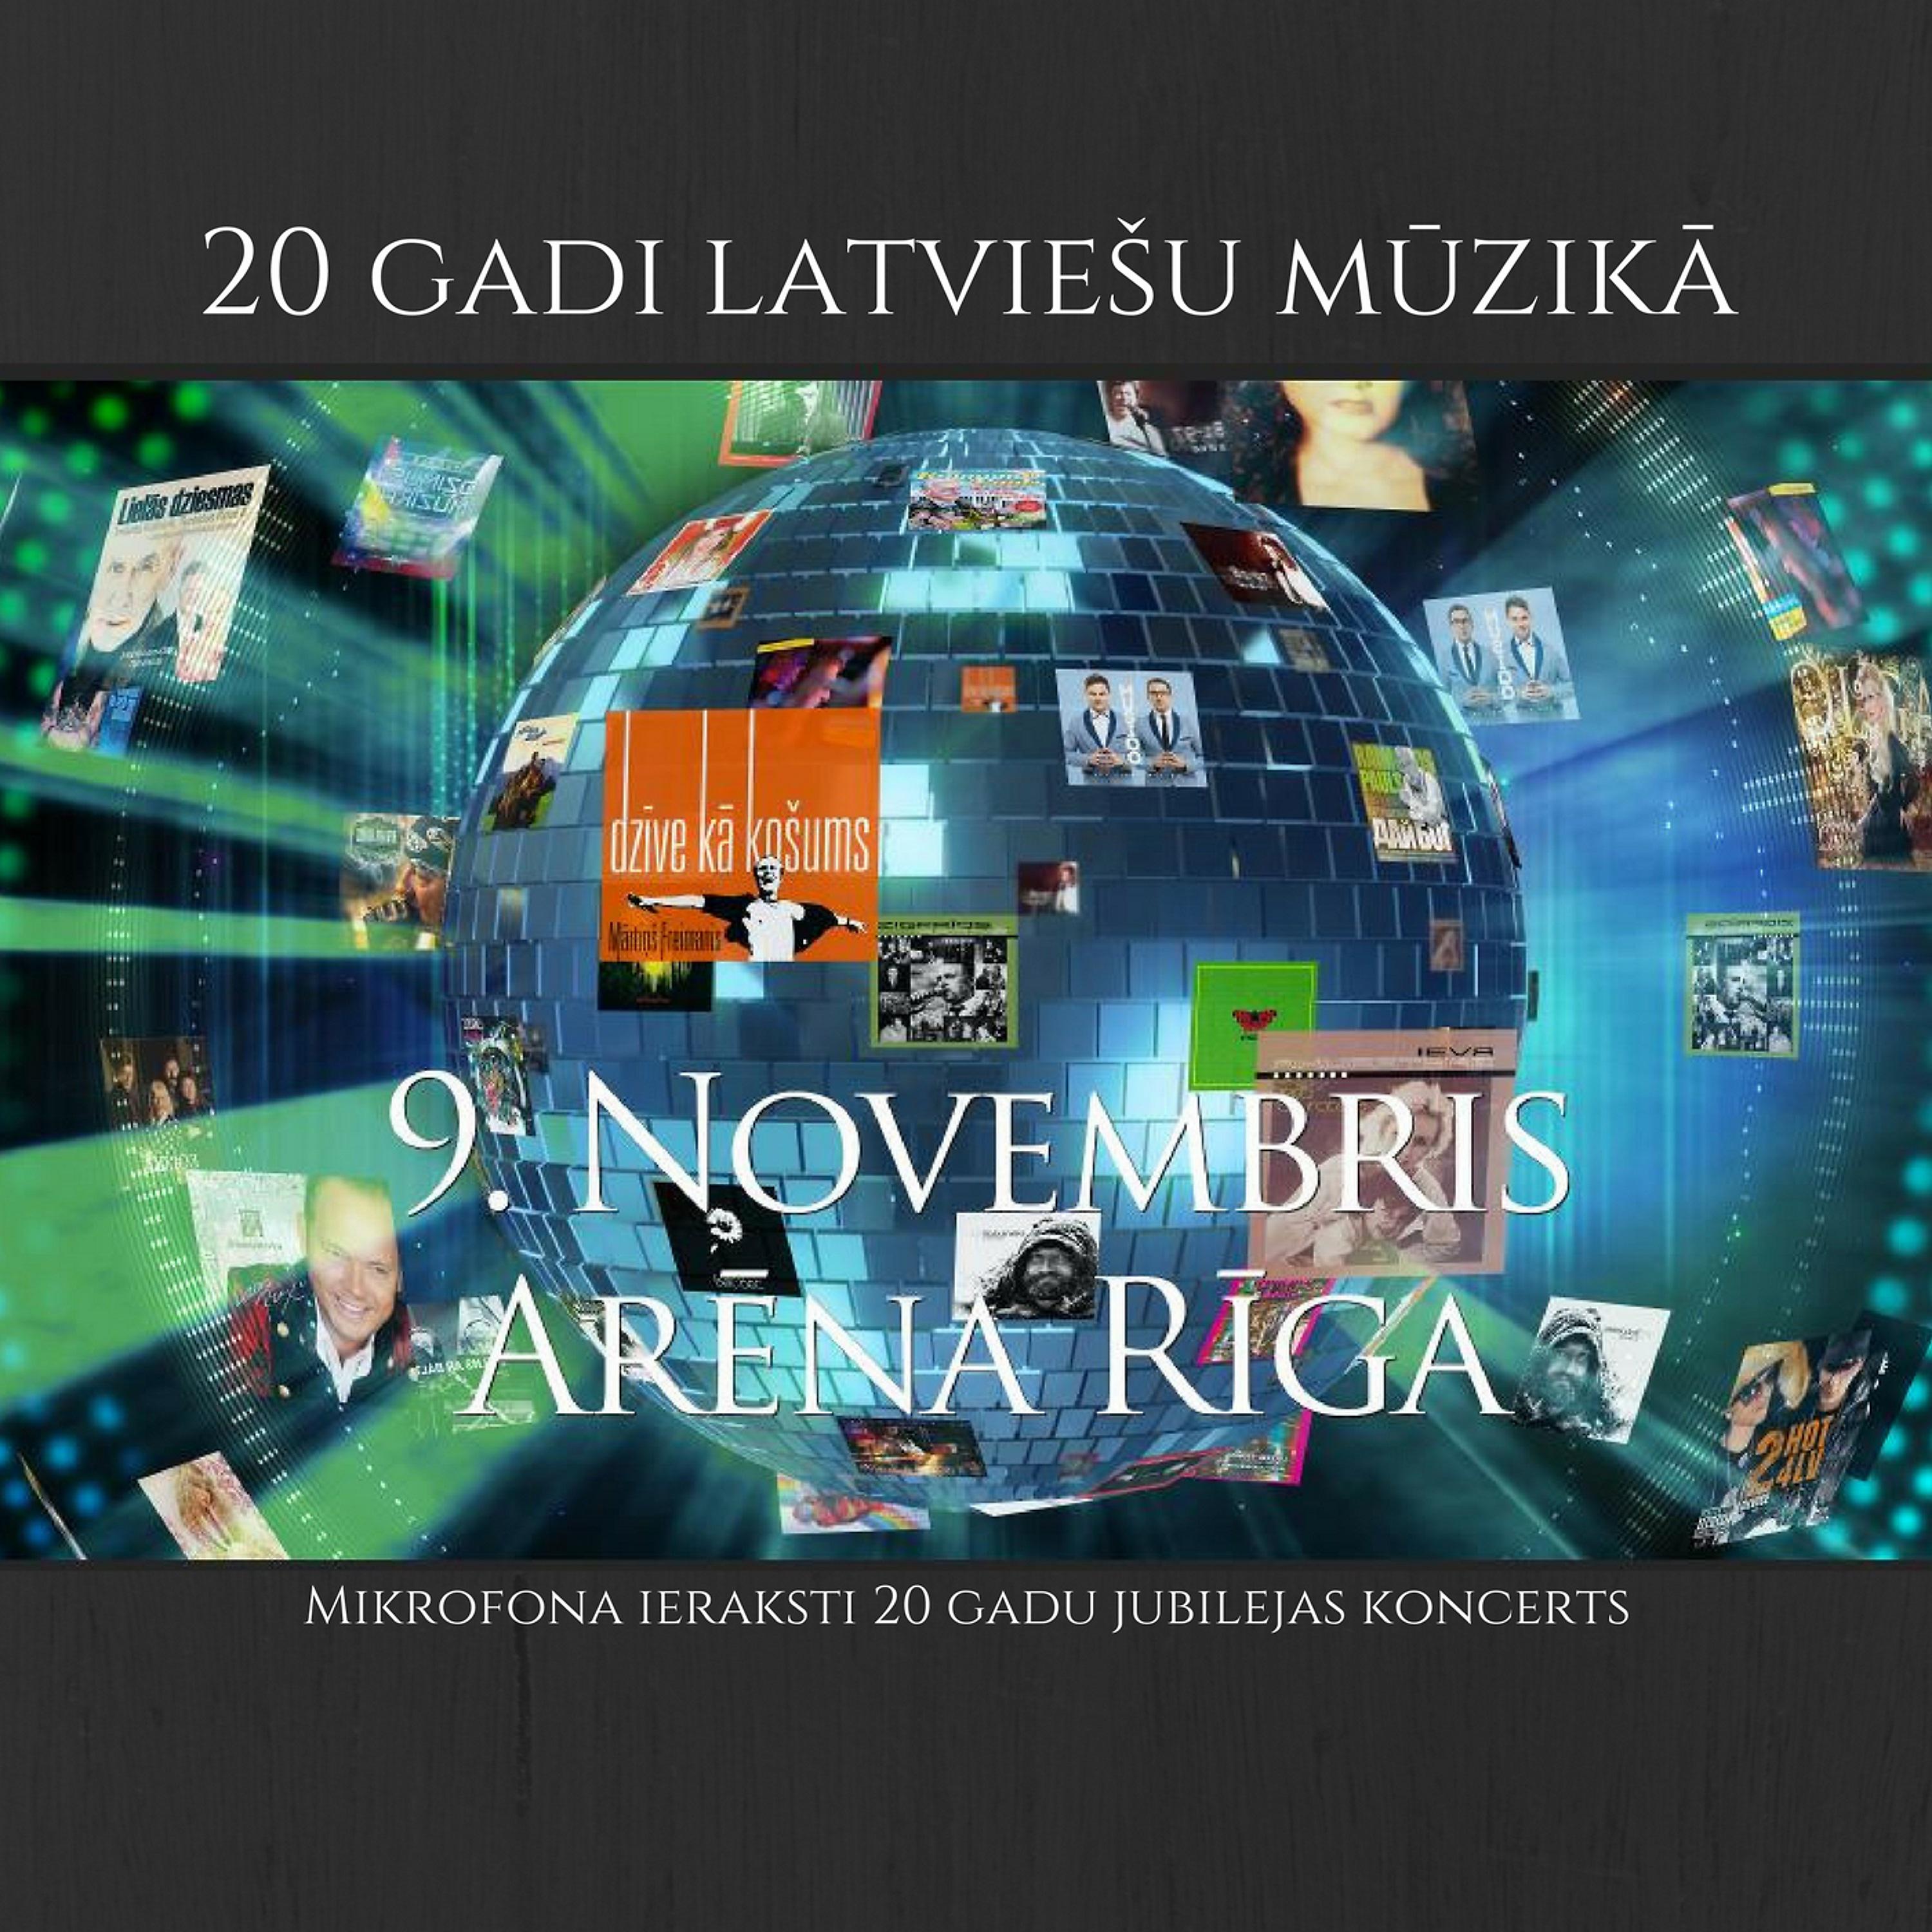 Постер альбома Lielkoncerts "20 gadi latviešu mūzikā" Arēnā Rīga, Live 9.11.2016.